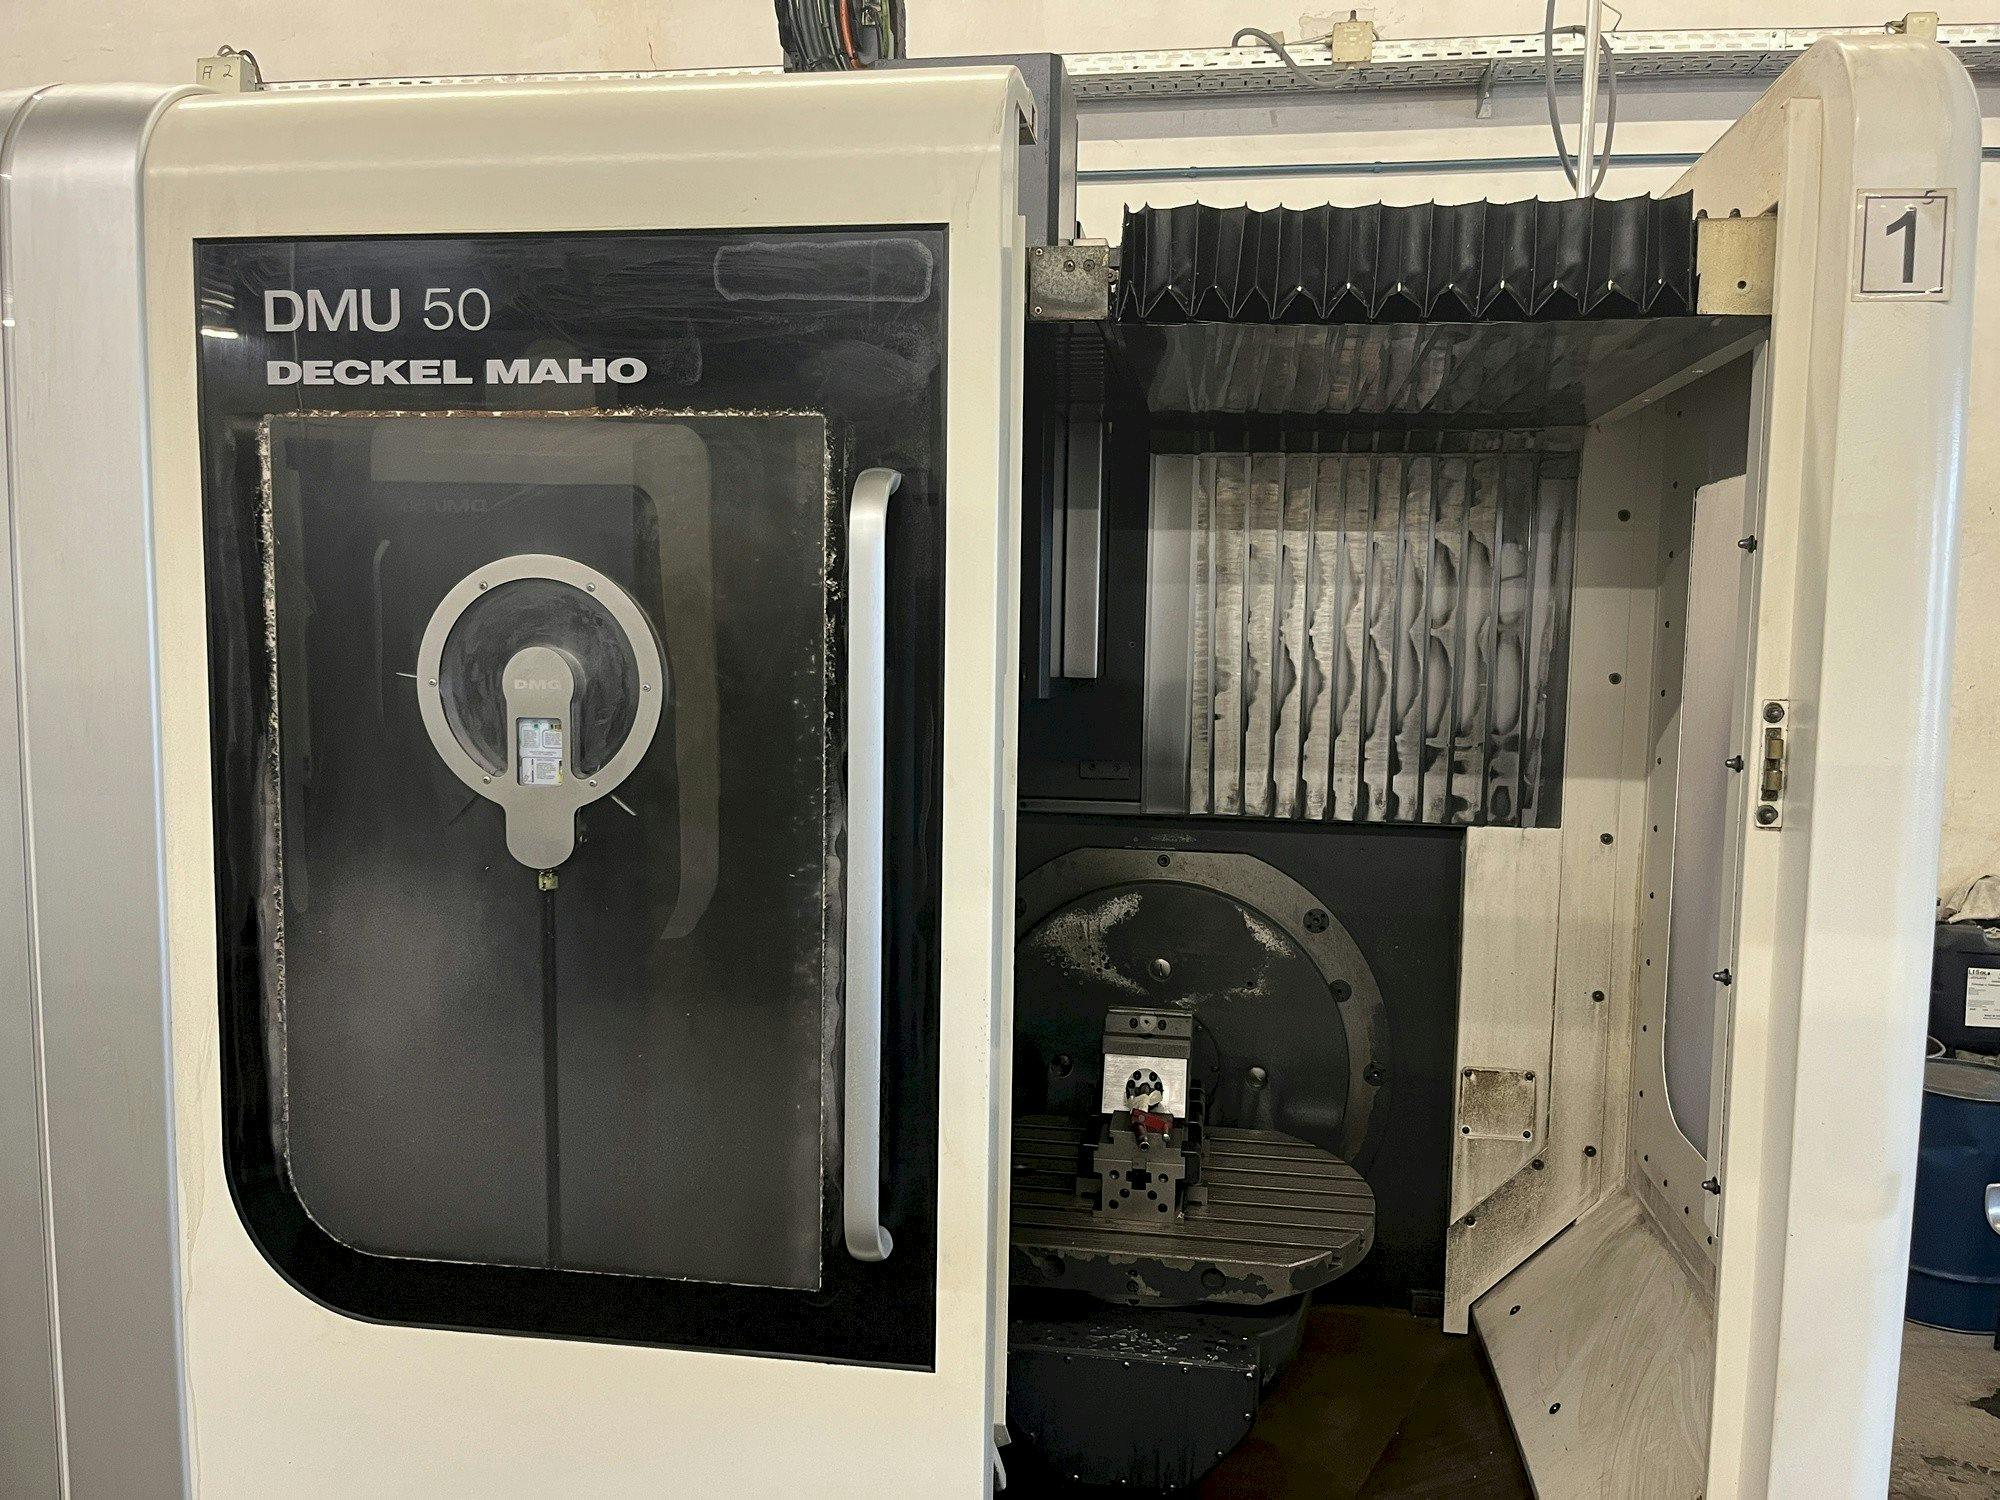 Frontansicht der DECKEL MAHO DMU 50  Maschine